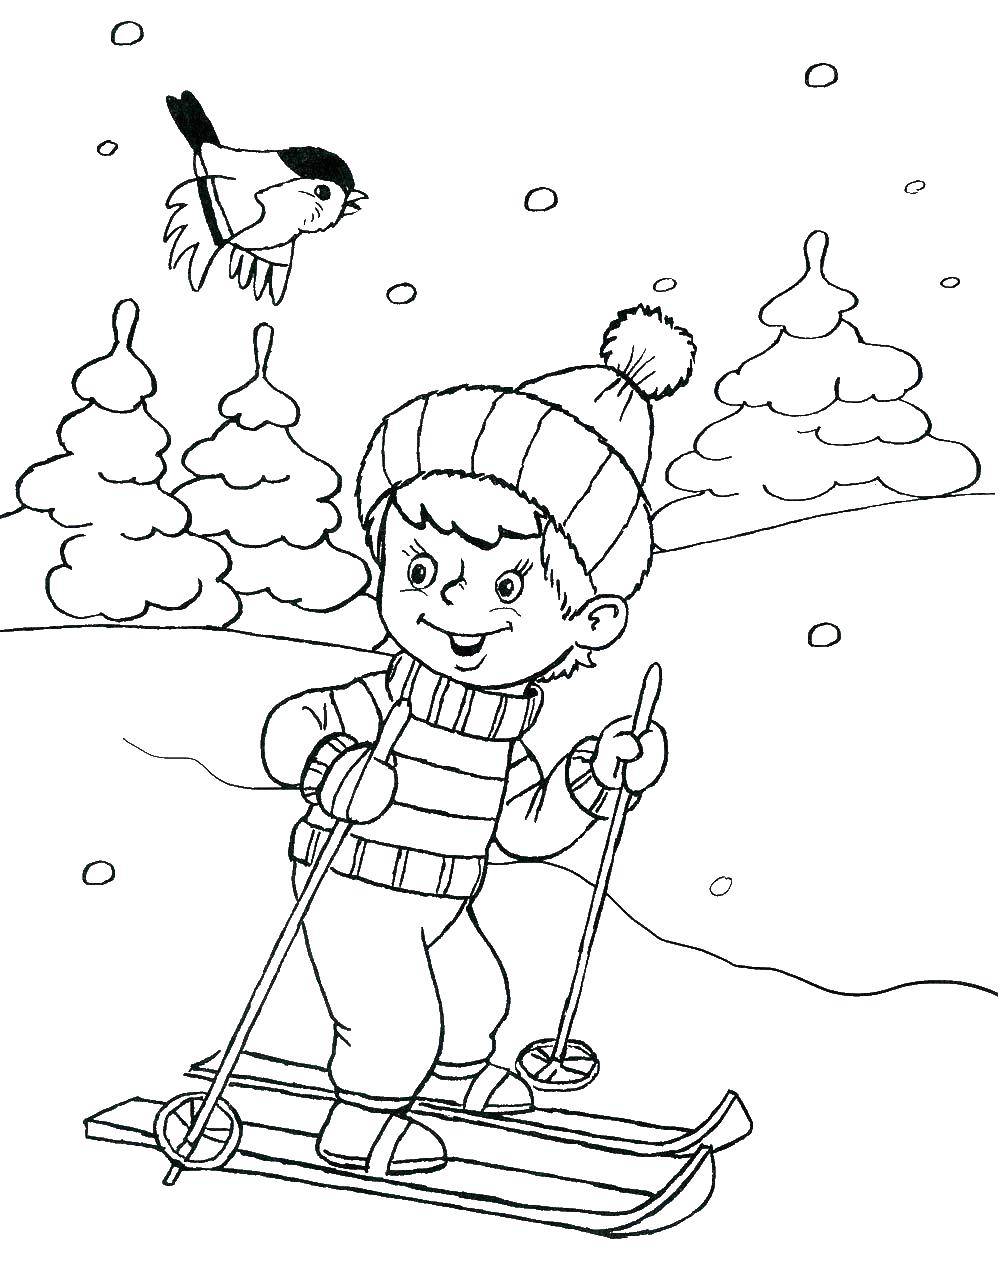 Раскраска Люди на лыжах для мальчика (мальчик, креативность)